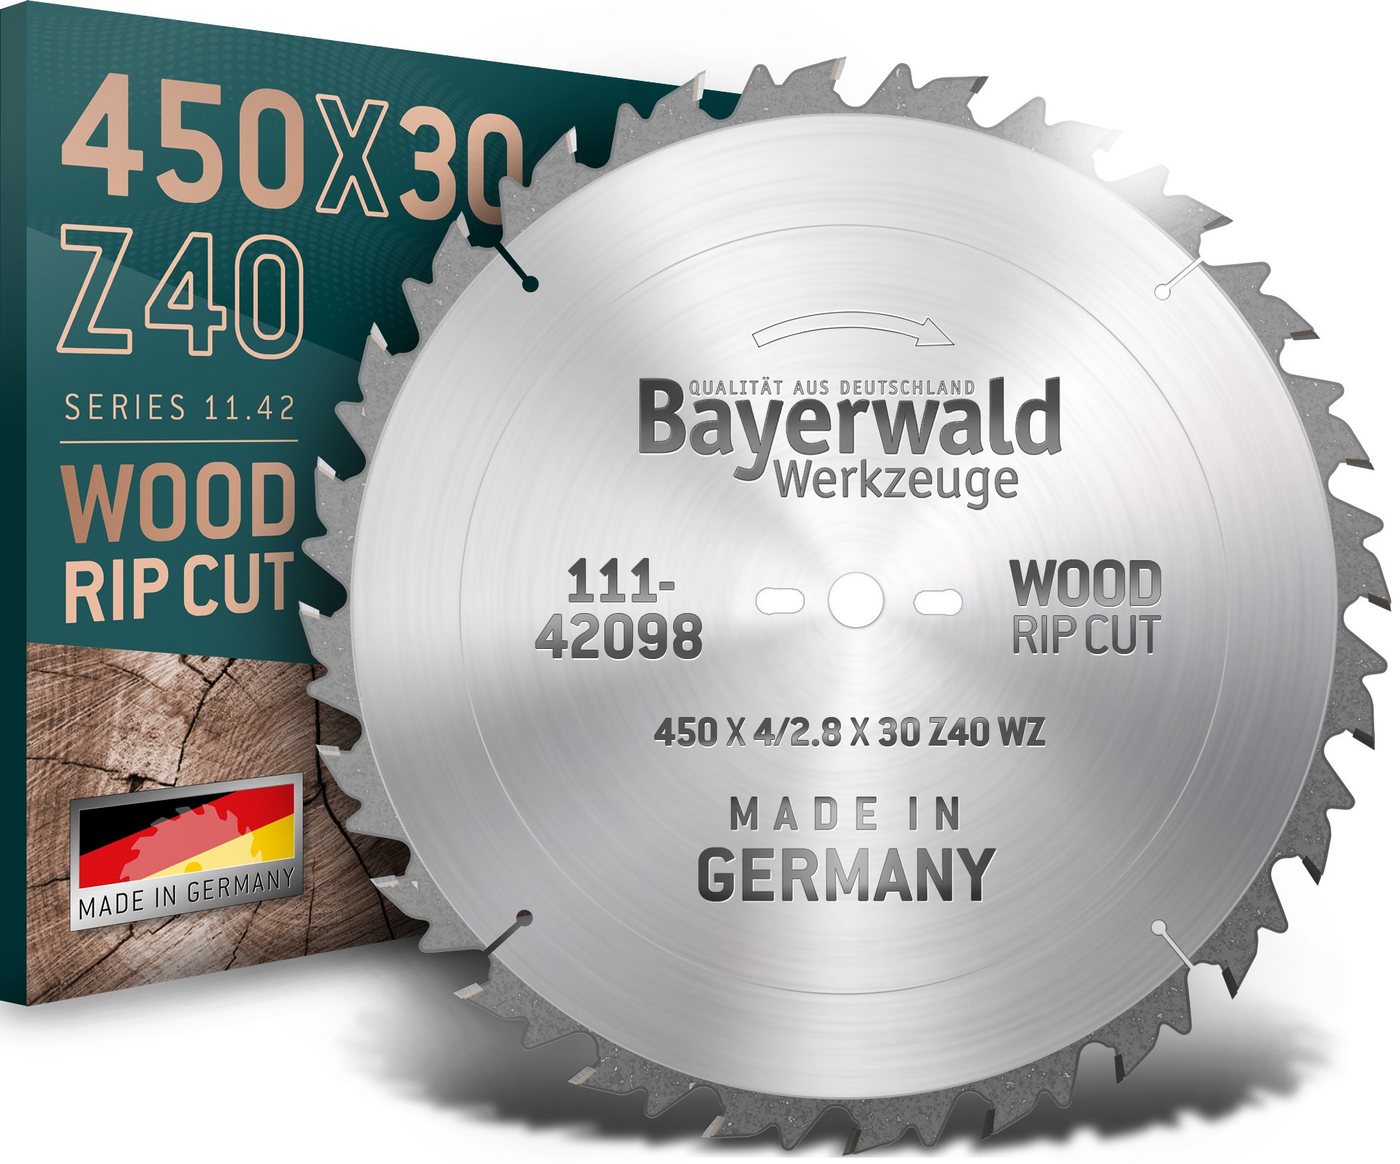 QUALITÄT AUS DEUTSCHLAND Bayerwald Werkzeuge Kreissägeblatt HM Kreissägeblatt - 450 x 4/2.8 x 30 Z40 WZ, 30 mm (Bohrung) WZ (Zahnform) positiv (Zahnstellung) 2, 9, 462, 10, 60 von QUALITÄT AUS DEUTSCHLAND Bayerwald Werkzeuge